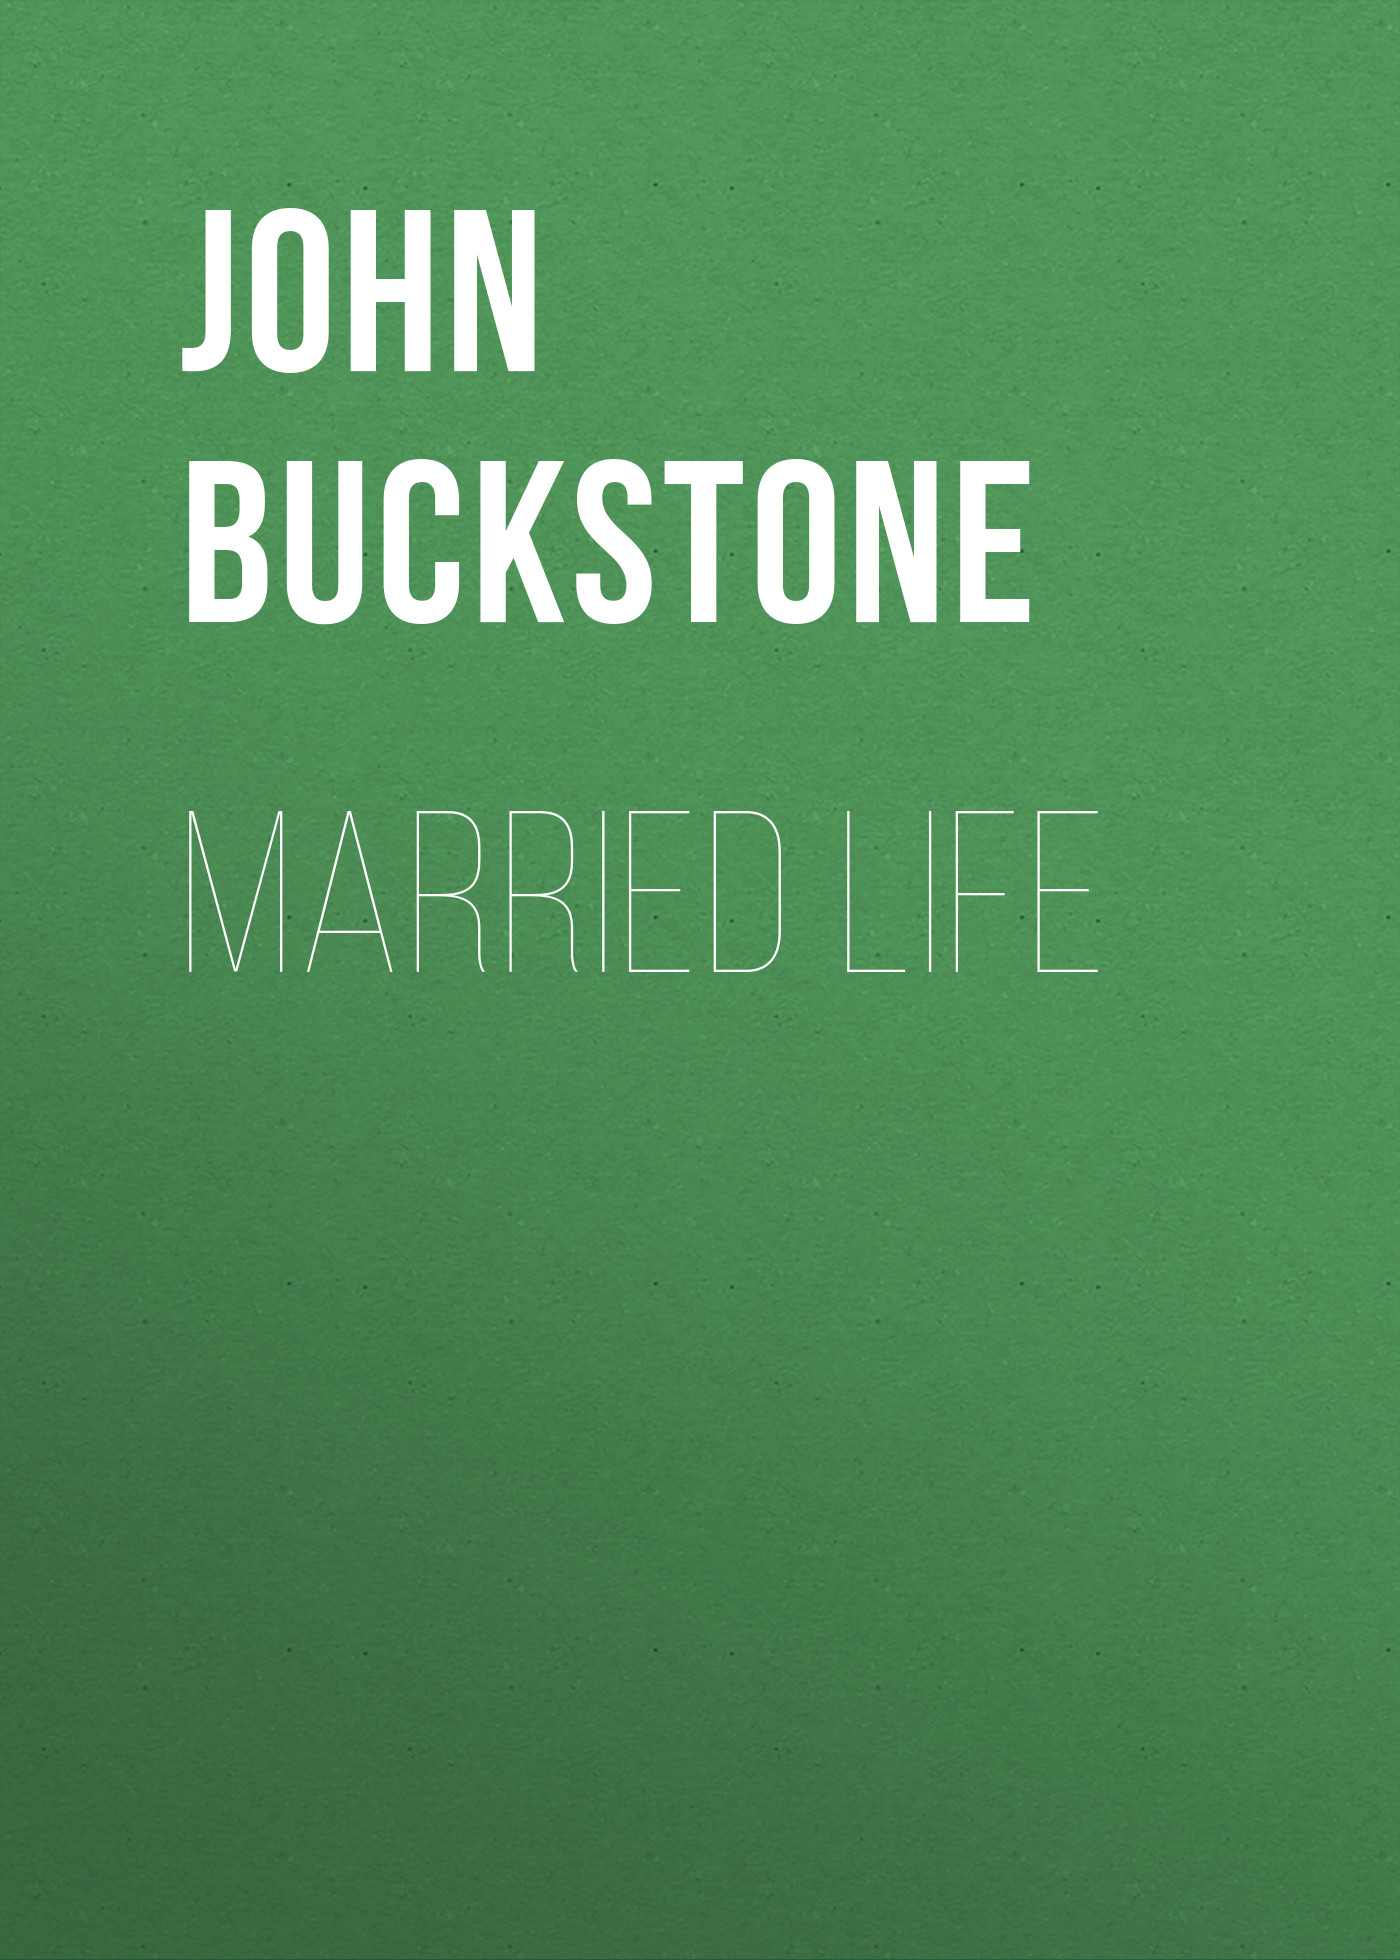 Книга Married Life из серии , созданная John Buckstone, может относится к жанру Зарубежная старинная литература, Зарубежная классика. Стоимость электронной книги Married Life с идентификатором 24173924 составляет 0 руб.